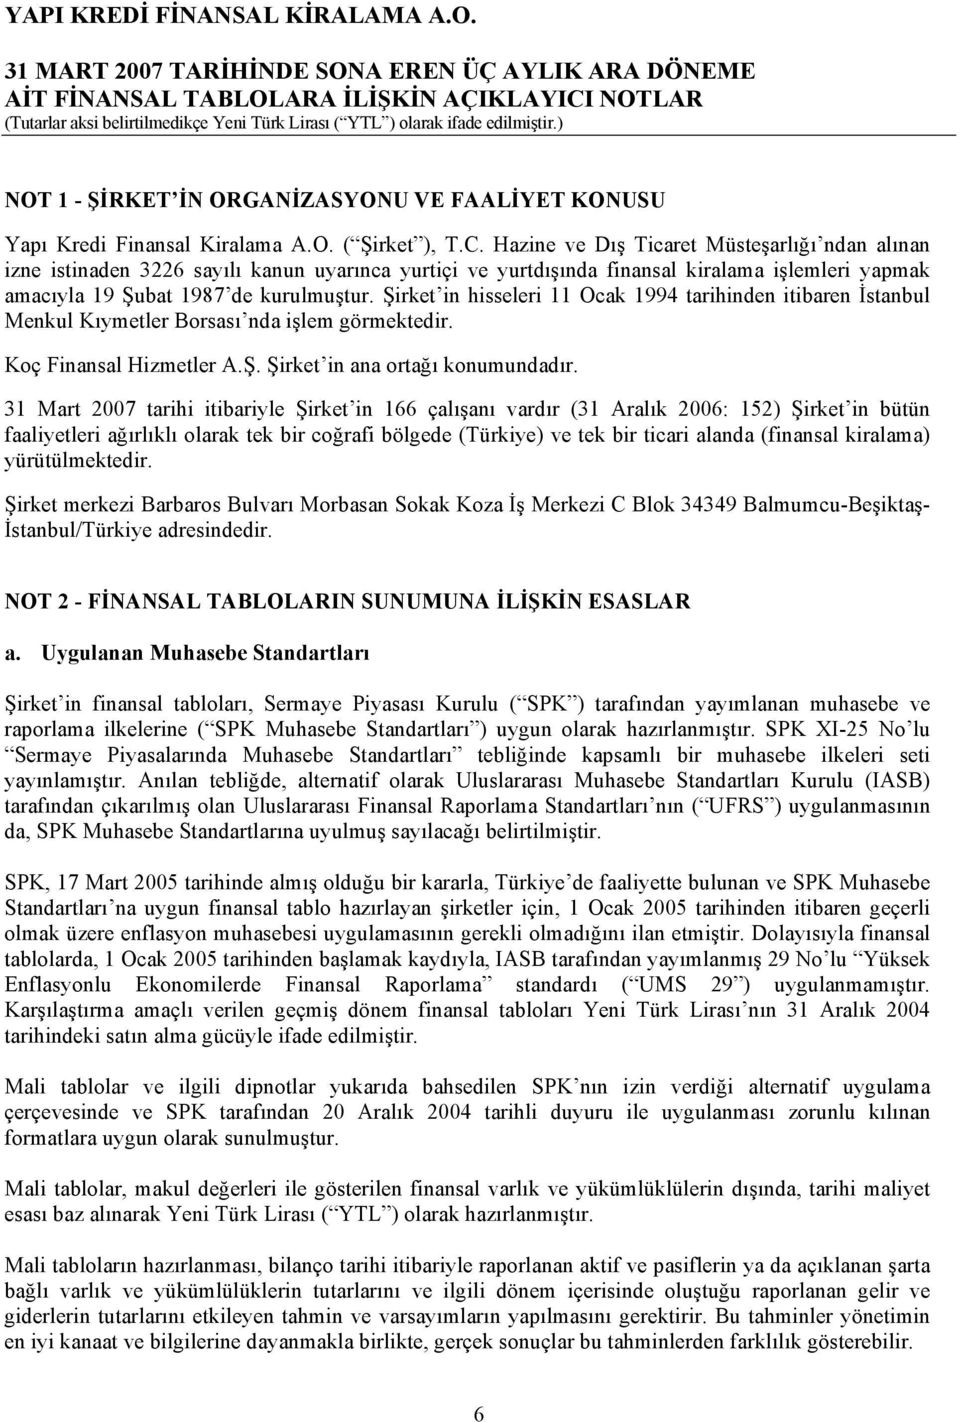 Şirket in hisseleri 11 Ocak 1994 tarihinden itibaren İstanbul Menkul Kıymetler Borsası nda işlem görmektedir. Koç Finansal Hizmetler A.Ş. Şirket in ana ortağı konumundadır.